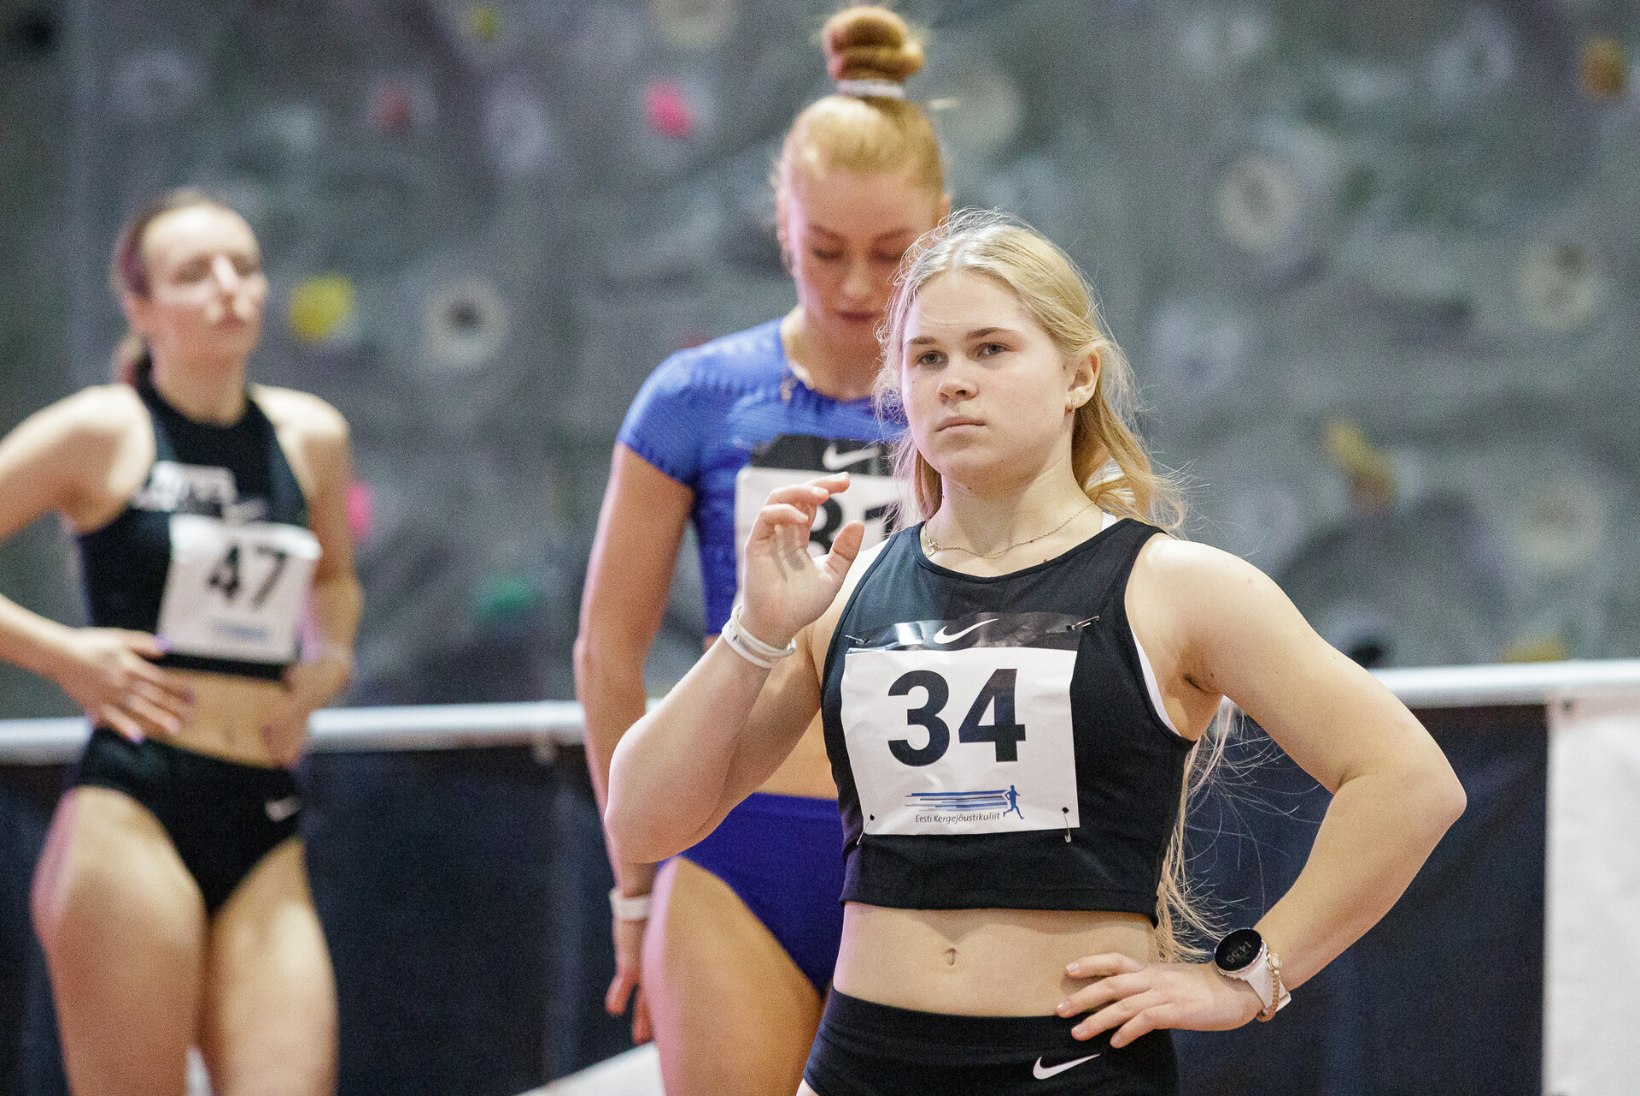 Nutikas harjutamine tõstis 15aastase sprinteri Eesti naiste paremikku